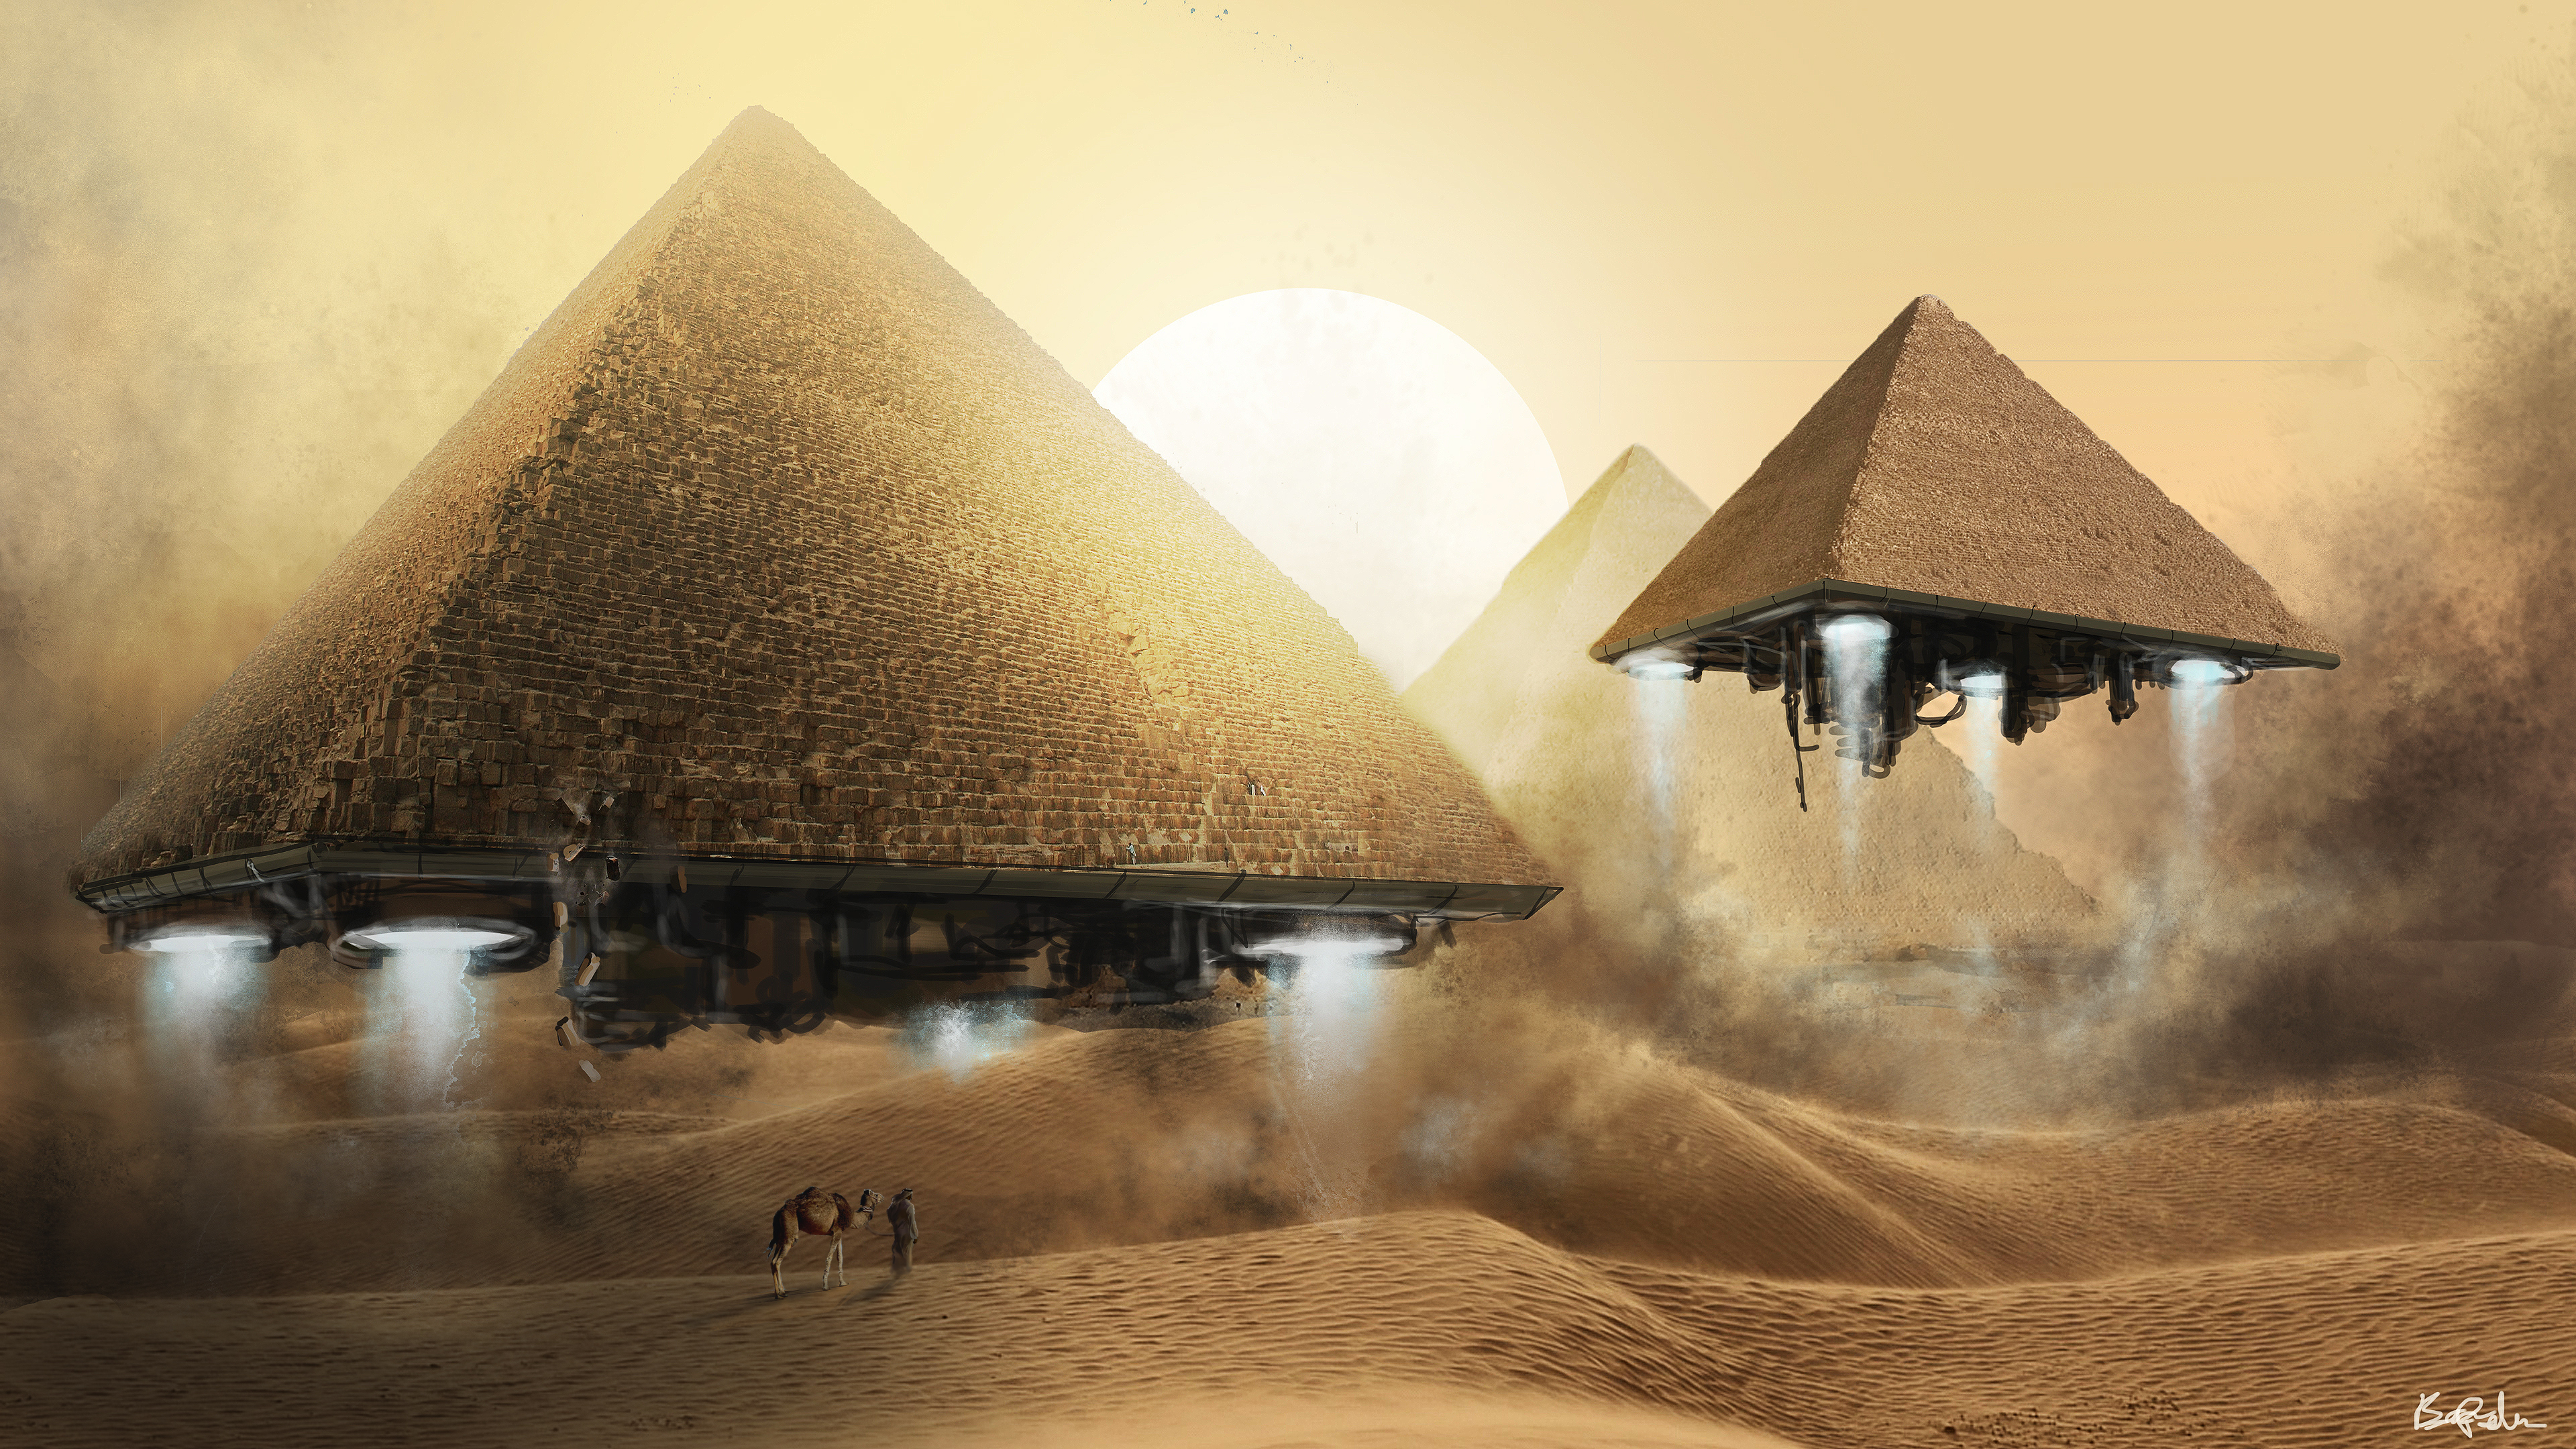 пирамиды и солнце